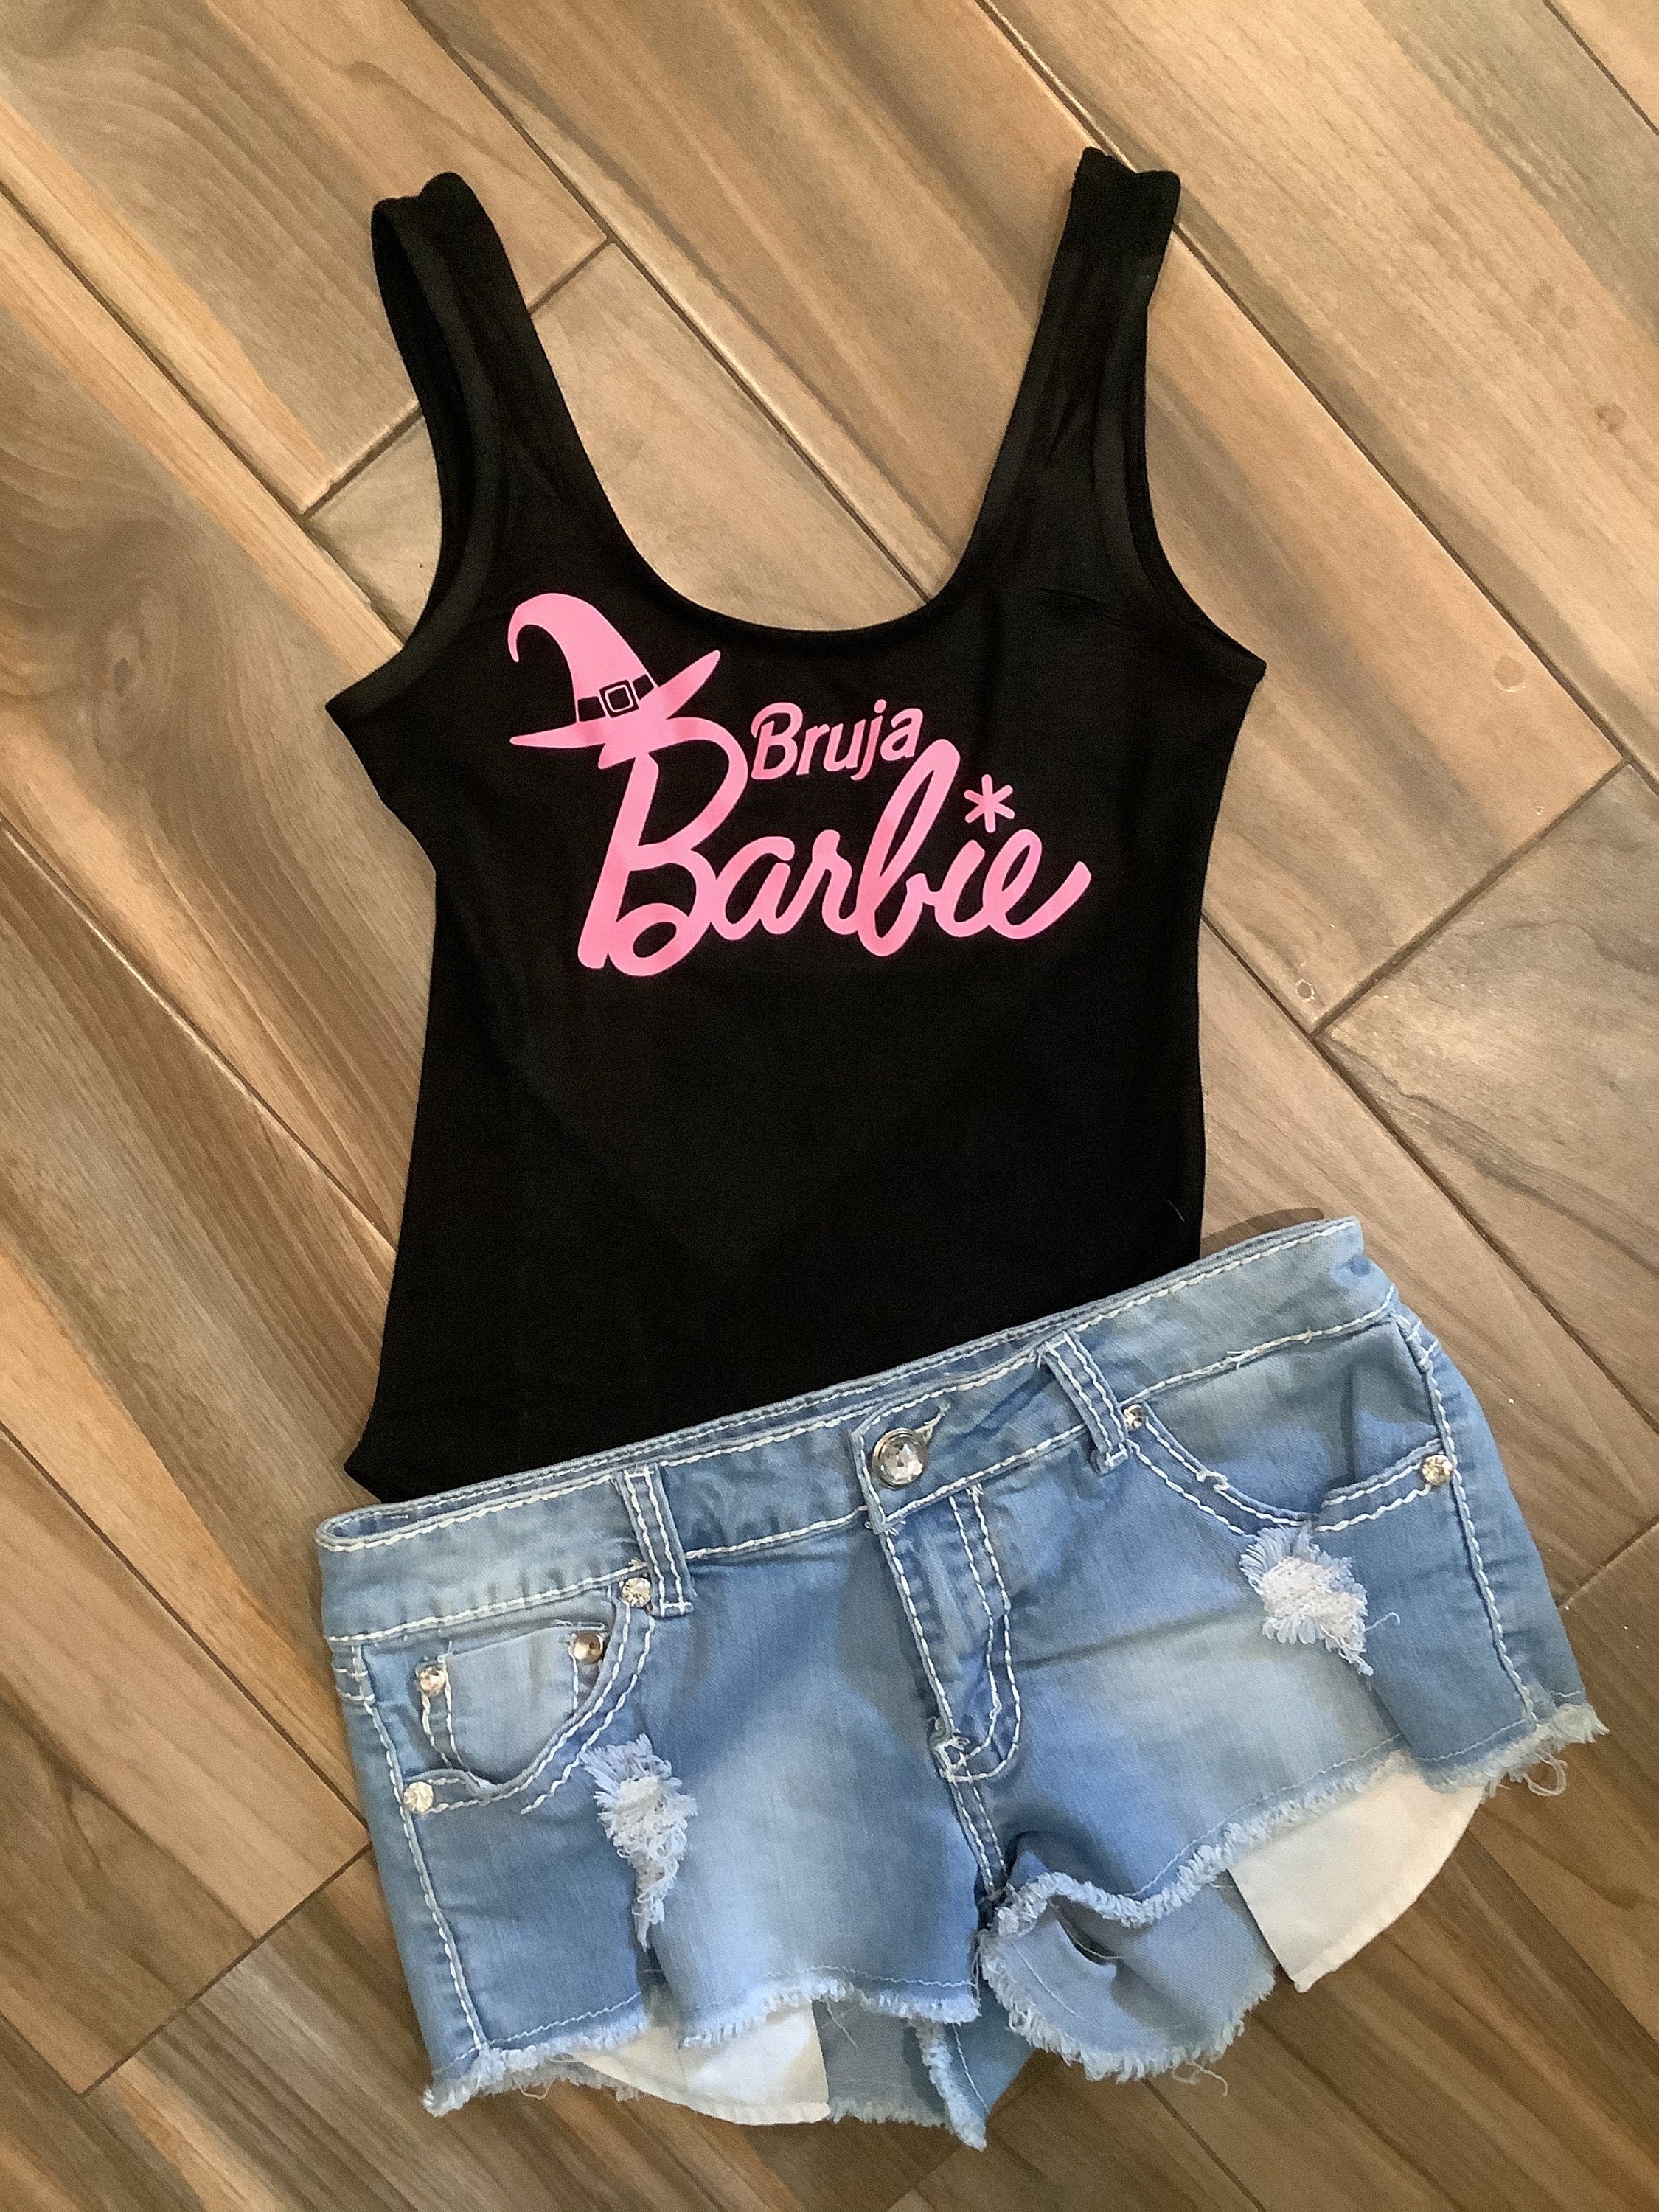 Bruja Barbie Top: Fun Apparel for Women – LuLu Grace